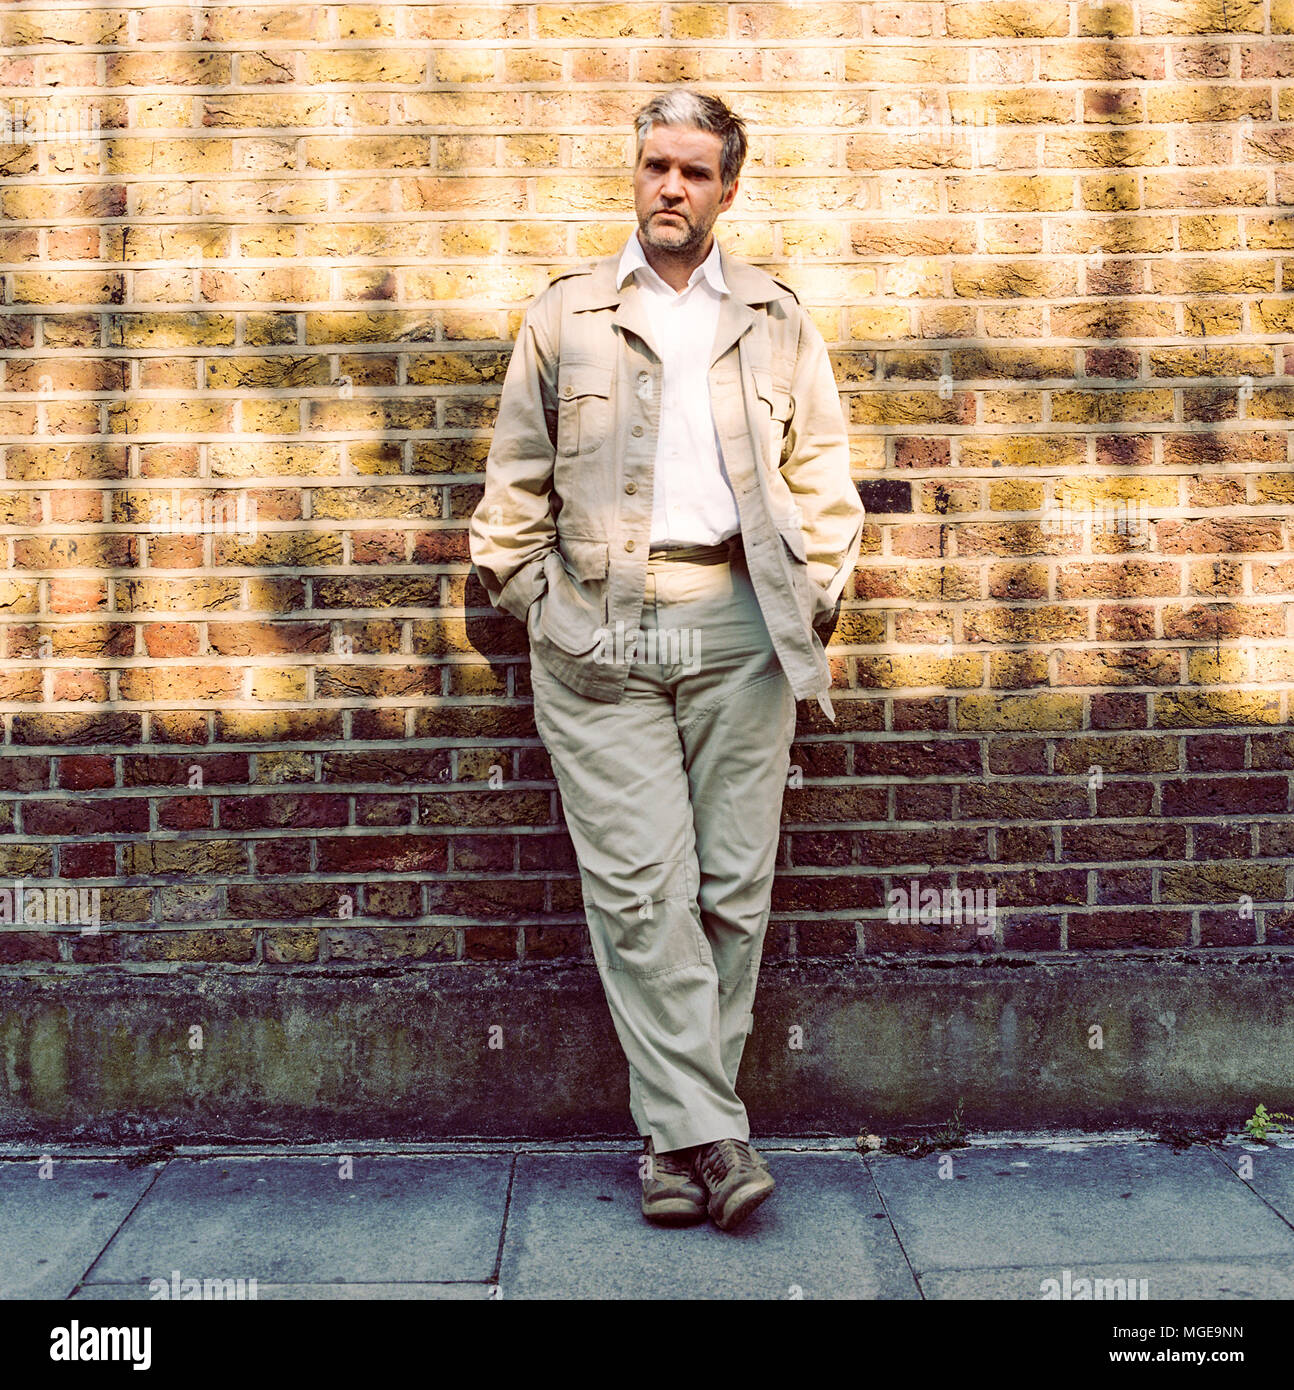 Chanteur auteur-compositeur Lloyd Cole, mieux connu pour son rôle de chanteur de Lloyd Cole et les commotions de 1984 à 1989, photographié dans l'ouest de Londres, 30 août 2006. Banque D'Images